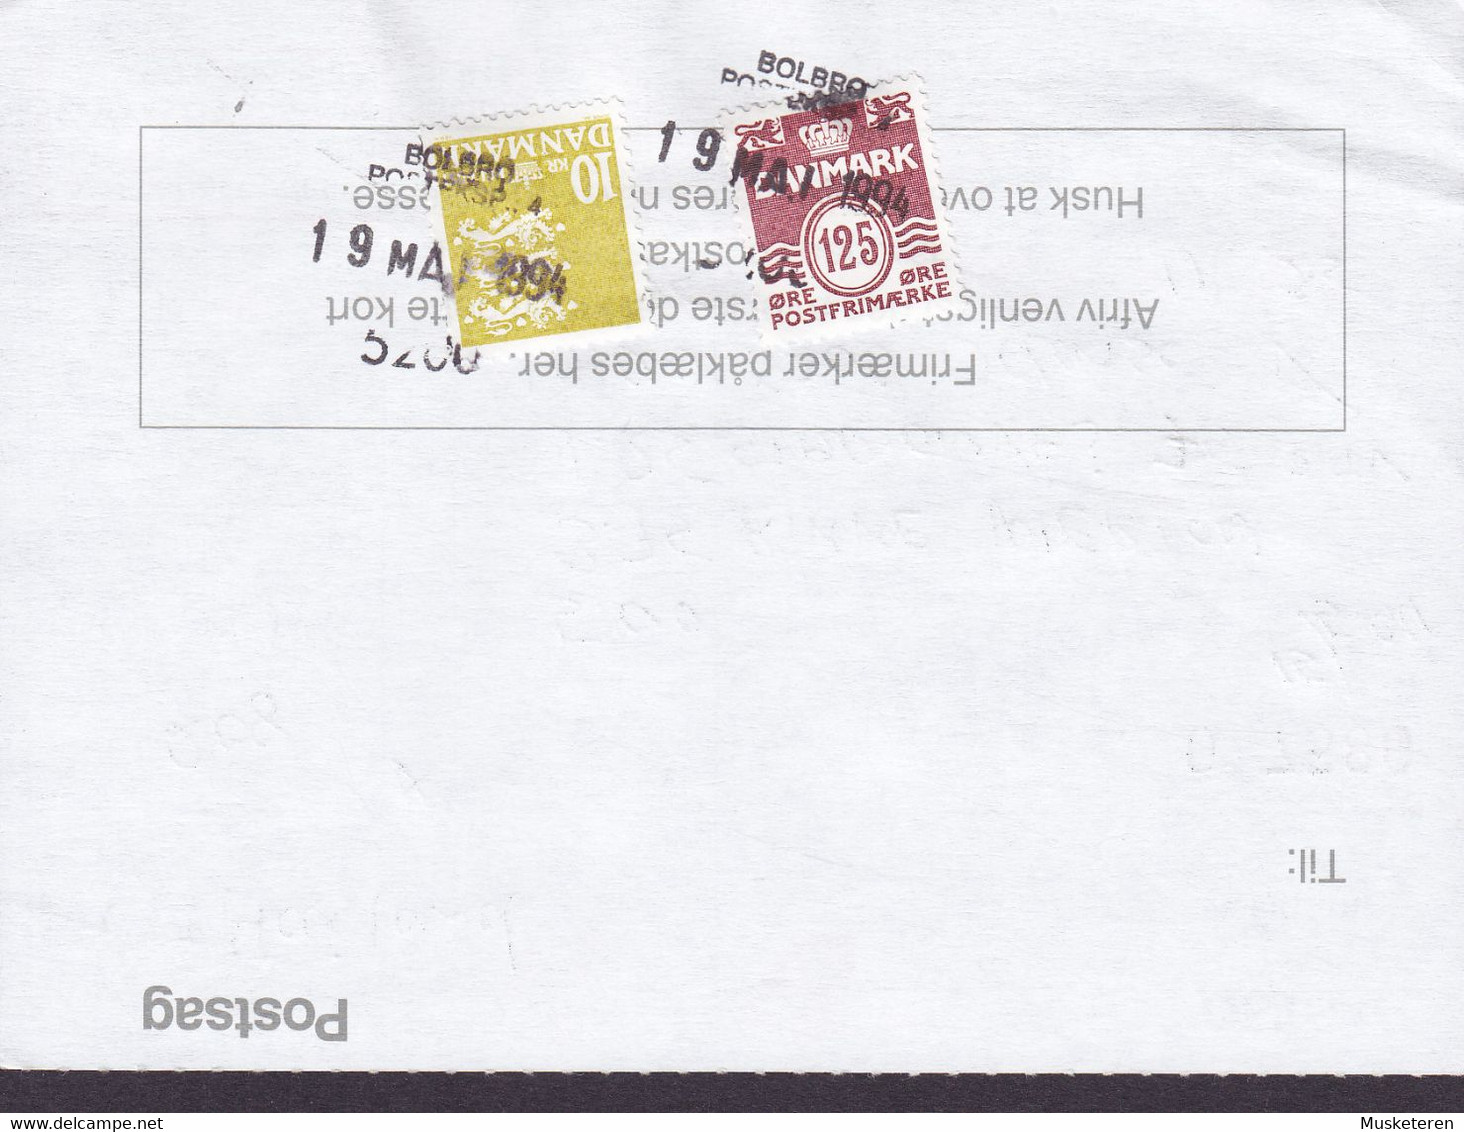 Denmark Regning Manglende Porto Bill TAXE Postage Due Thailand Line Cds. BOLBRO POSTEKSP. 1994 Postsag (2 Scans) - Briefe U. Dokumente